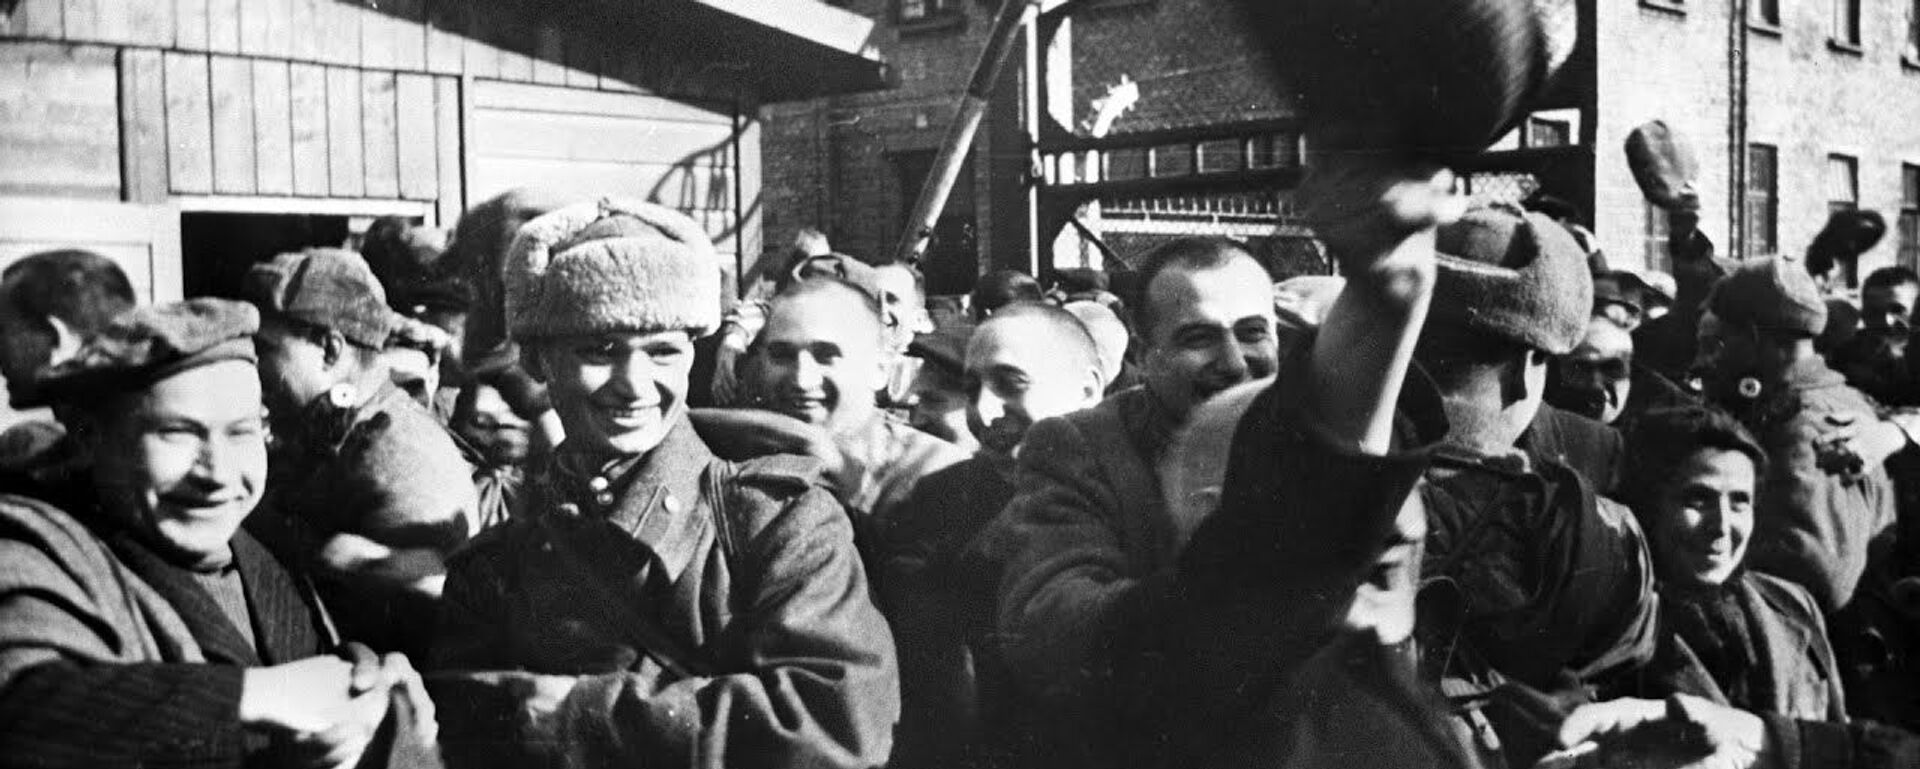 Невежество или четкий план: почему освобождение Освенцима приписывают американцам - Sputnik Узбекистан, 1920, 30.01.2020